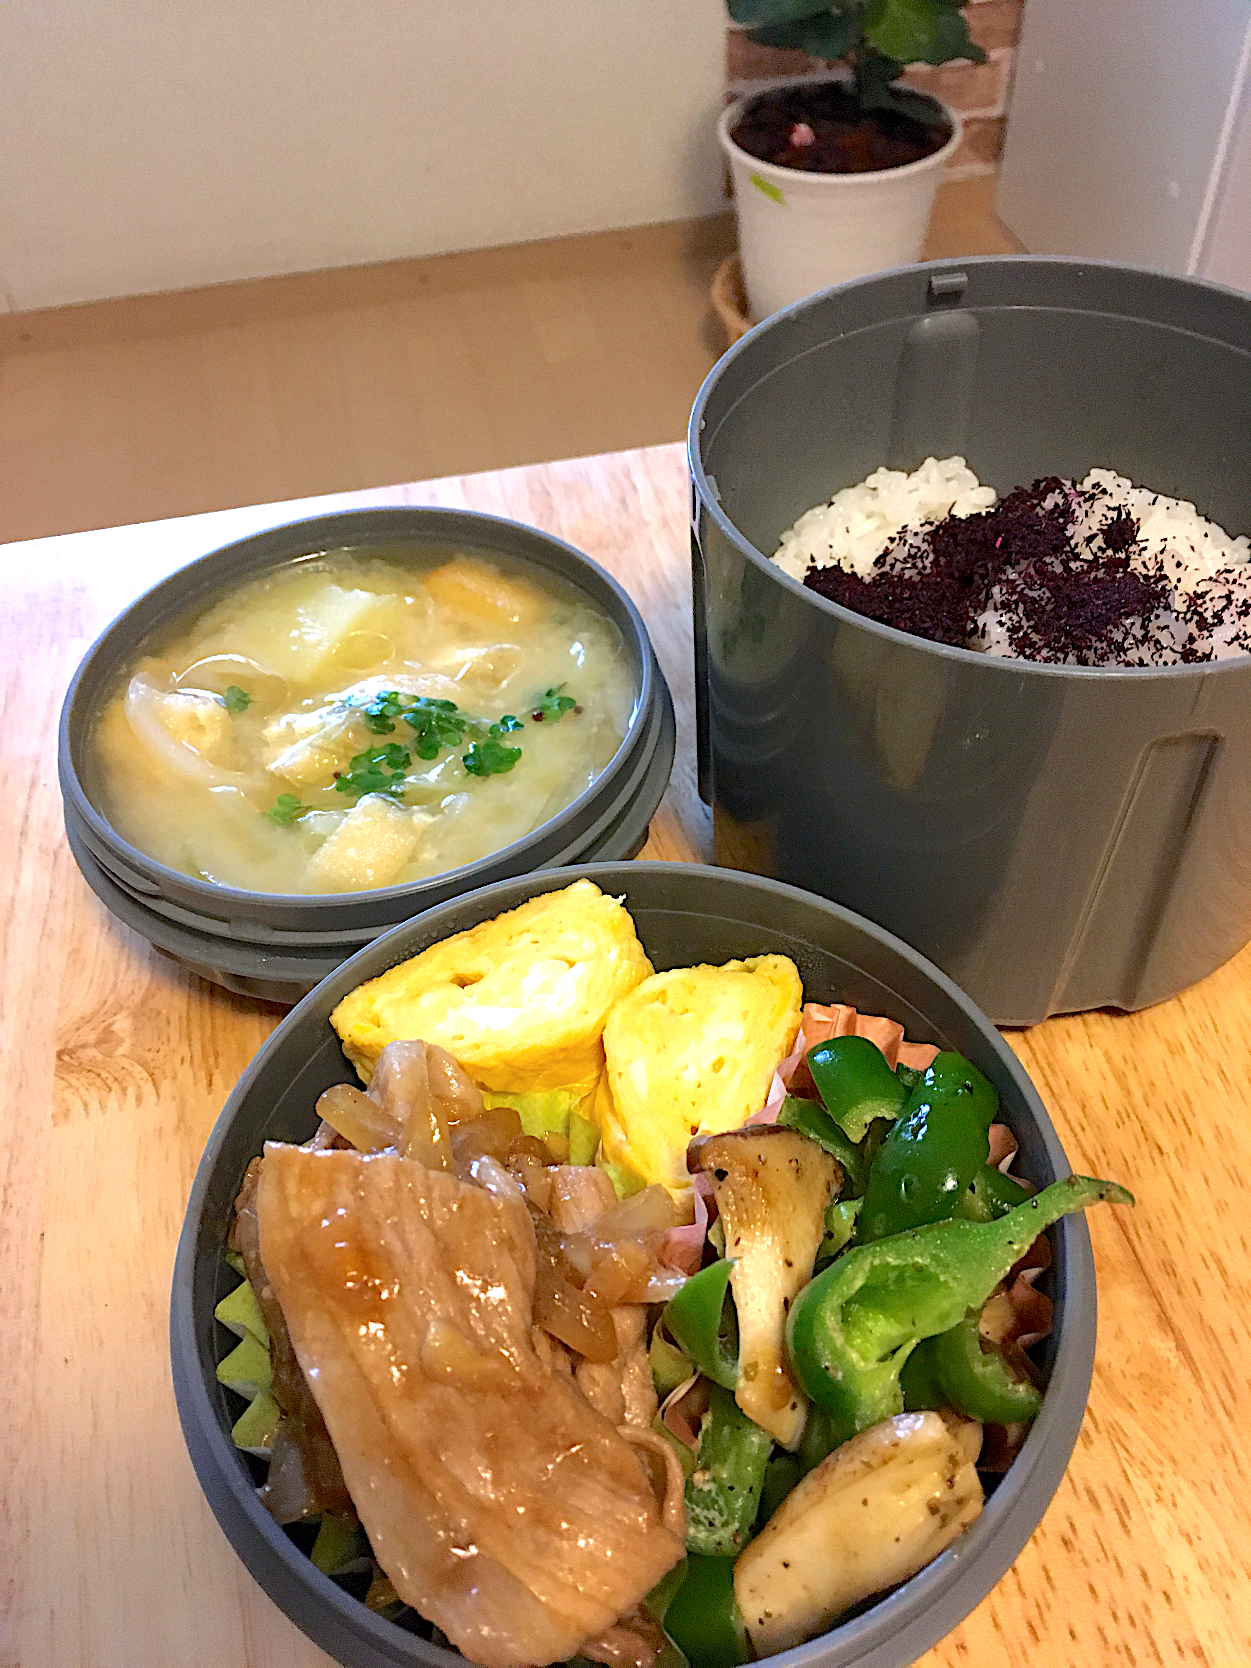 今日の旦那さんお弁当〜生姜焼き、卵焼き、ピーマンとエリンギのマヨソテー、ジャガイモのお味噌汁、ゆかりご飯🤤